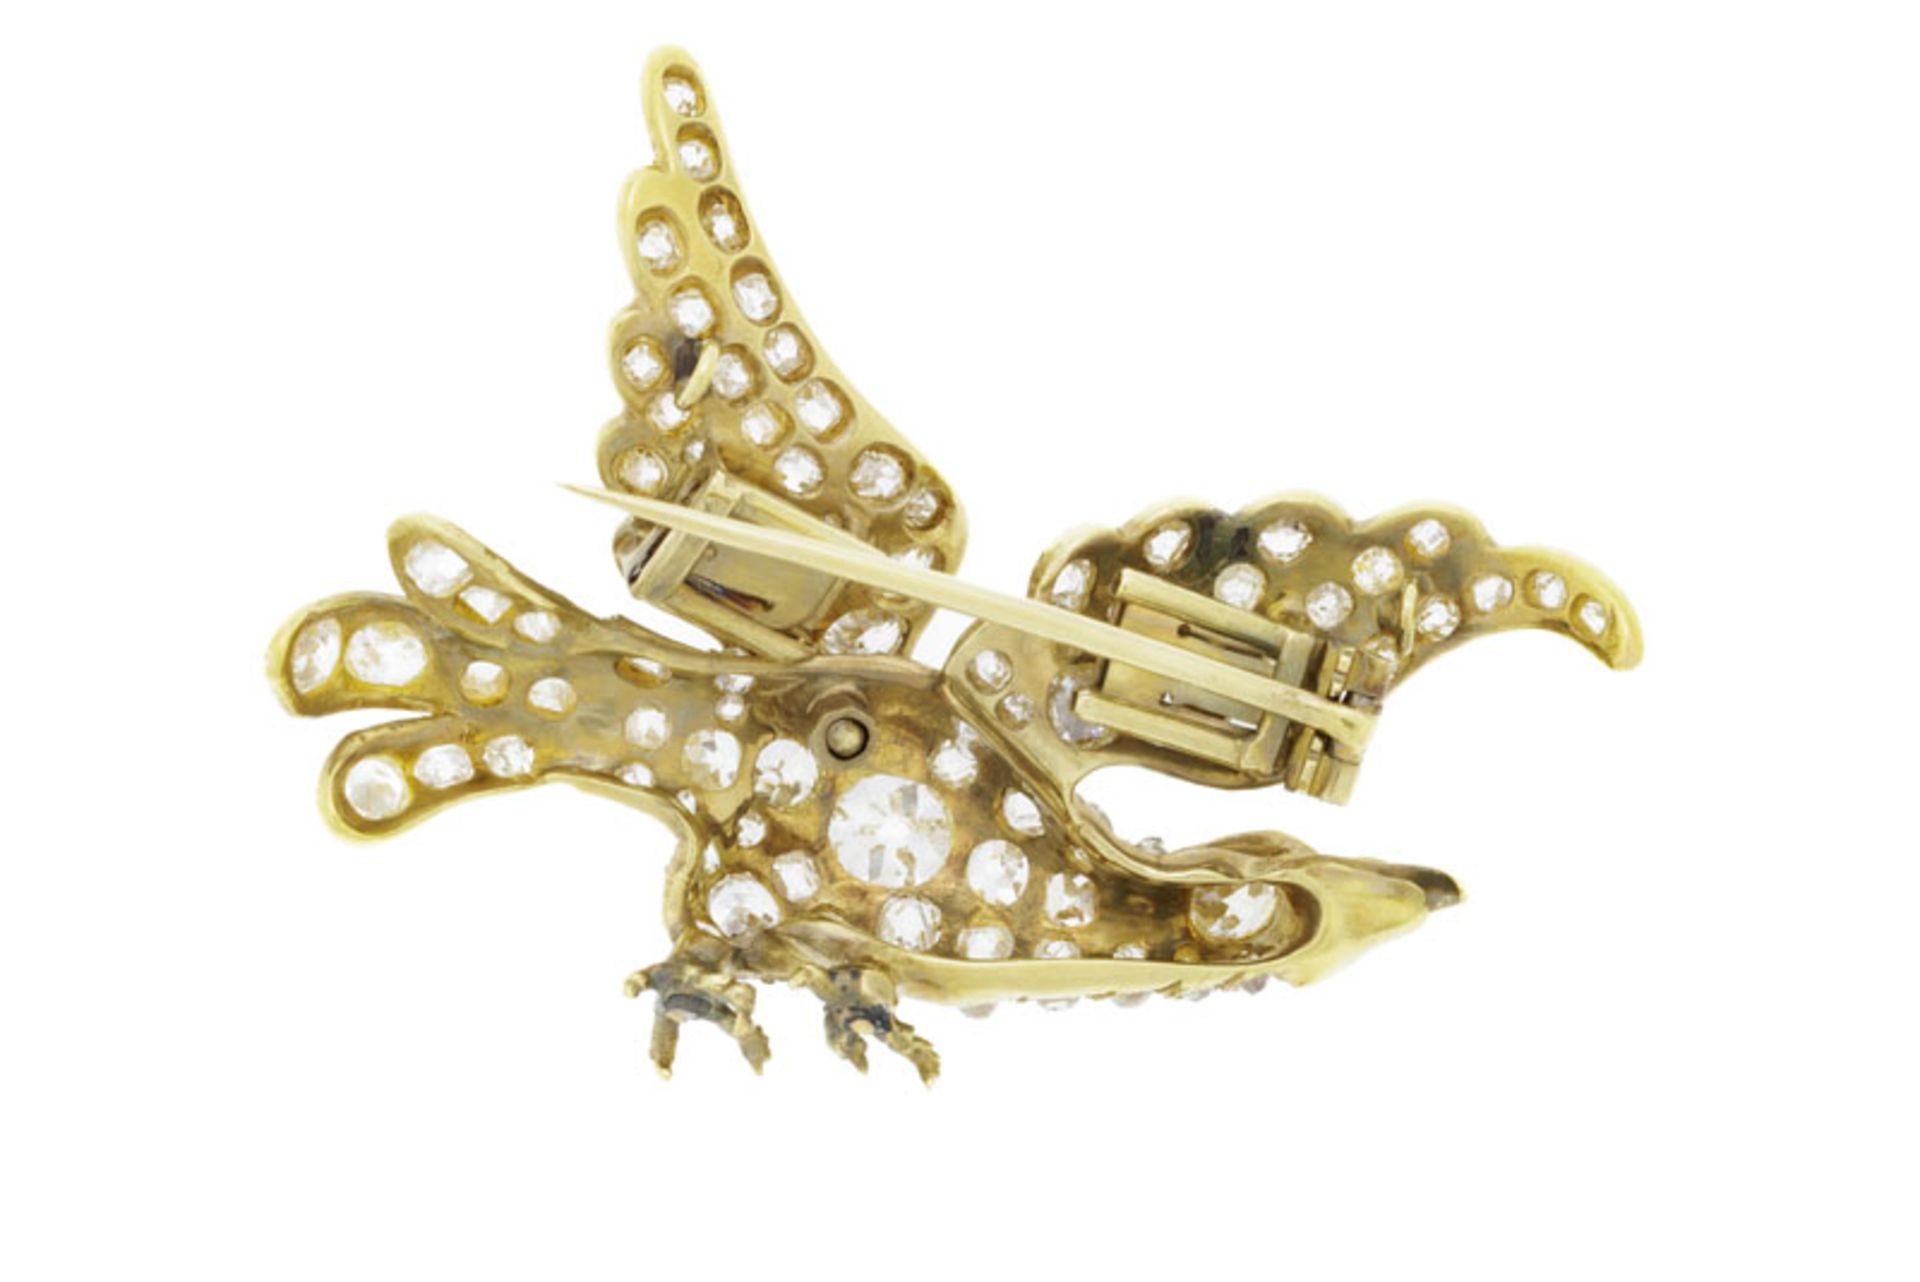 Broche fin XIXe s., or figurant un aigle les ailes déployées entièrement pavée de diamants taille an - Image 3 of 3